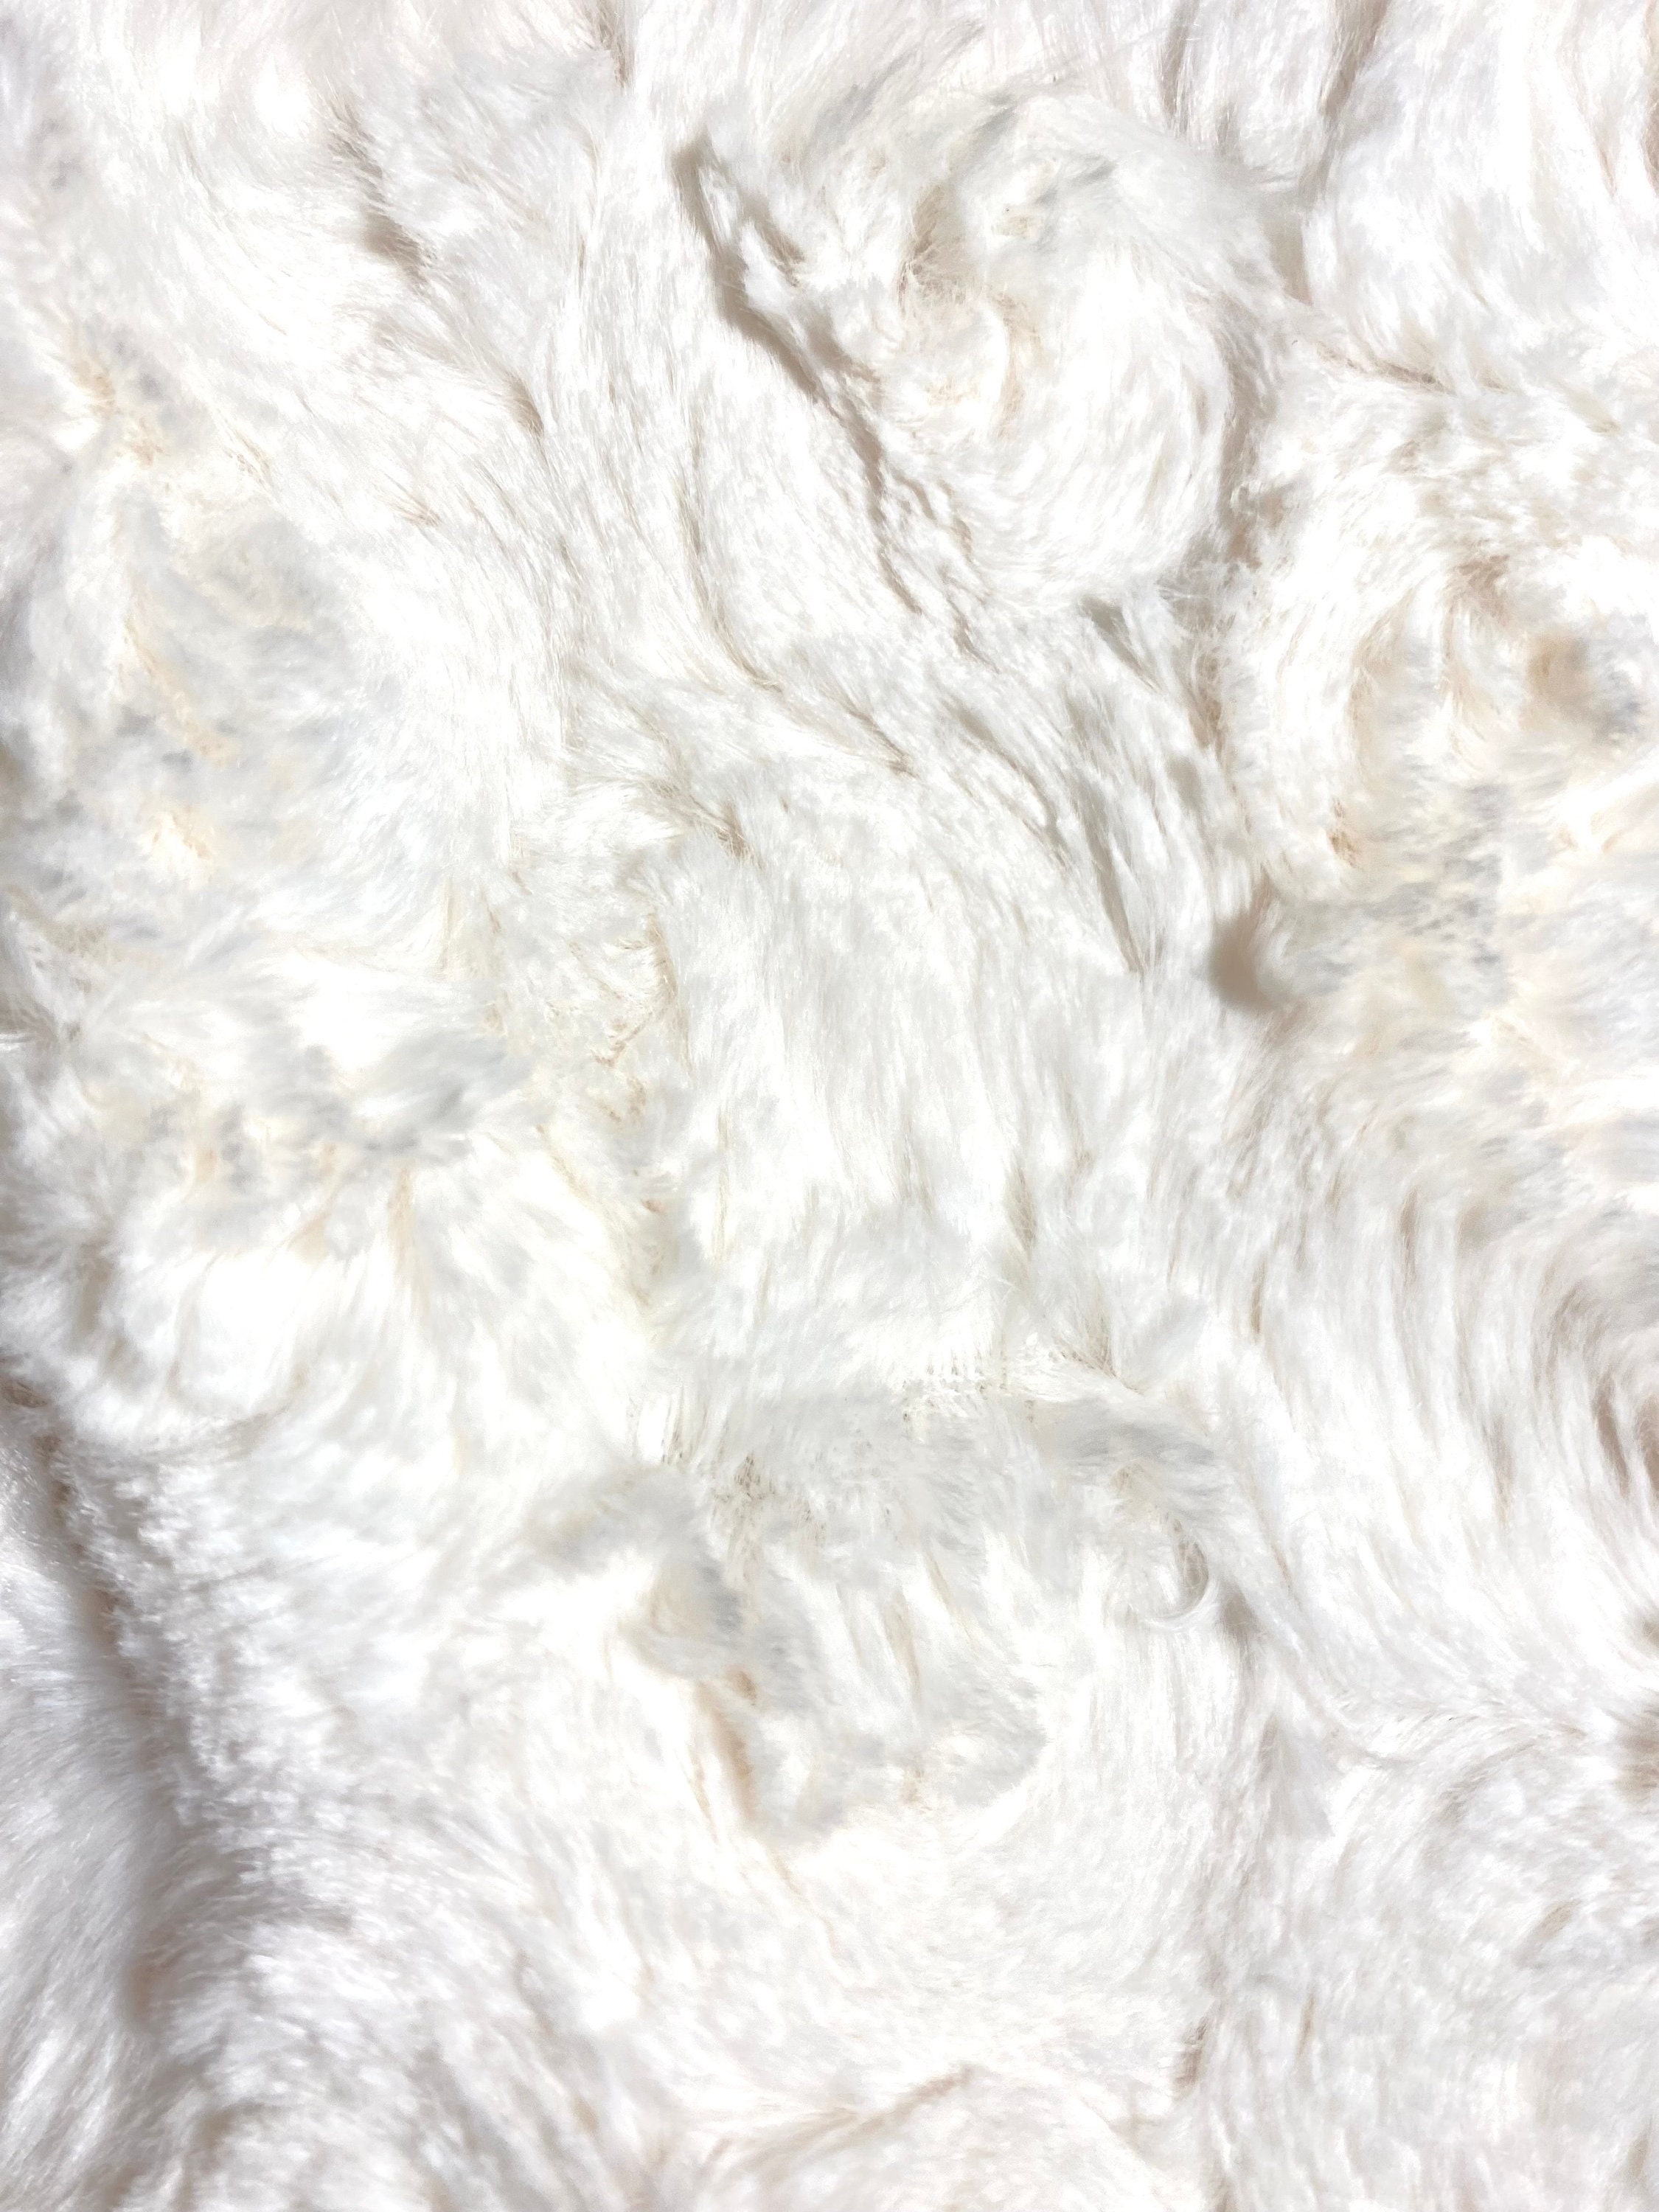 EZ Fabric Stretch Faux Fur Snow Chinchilla Snuggle White / Red